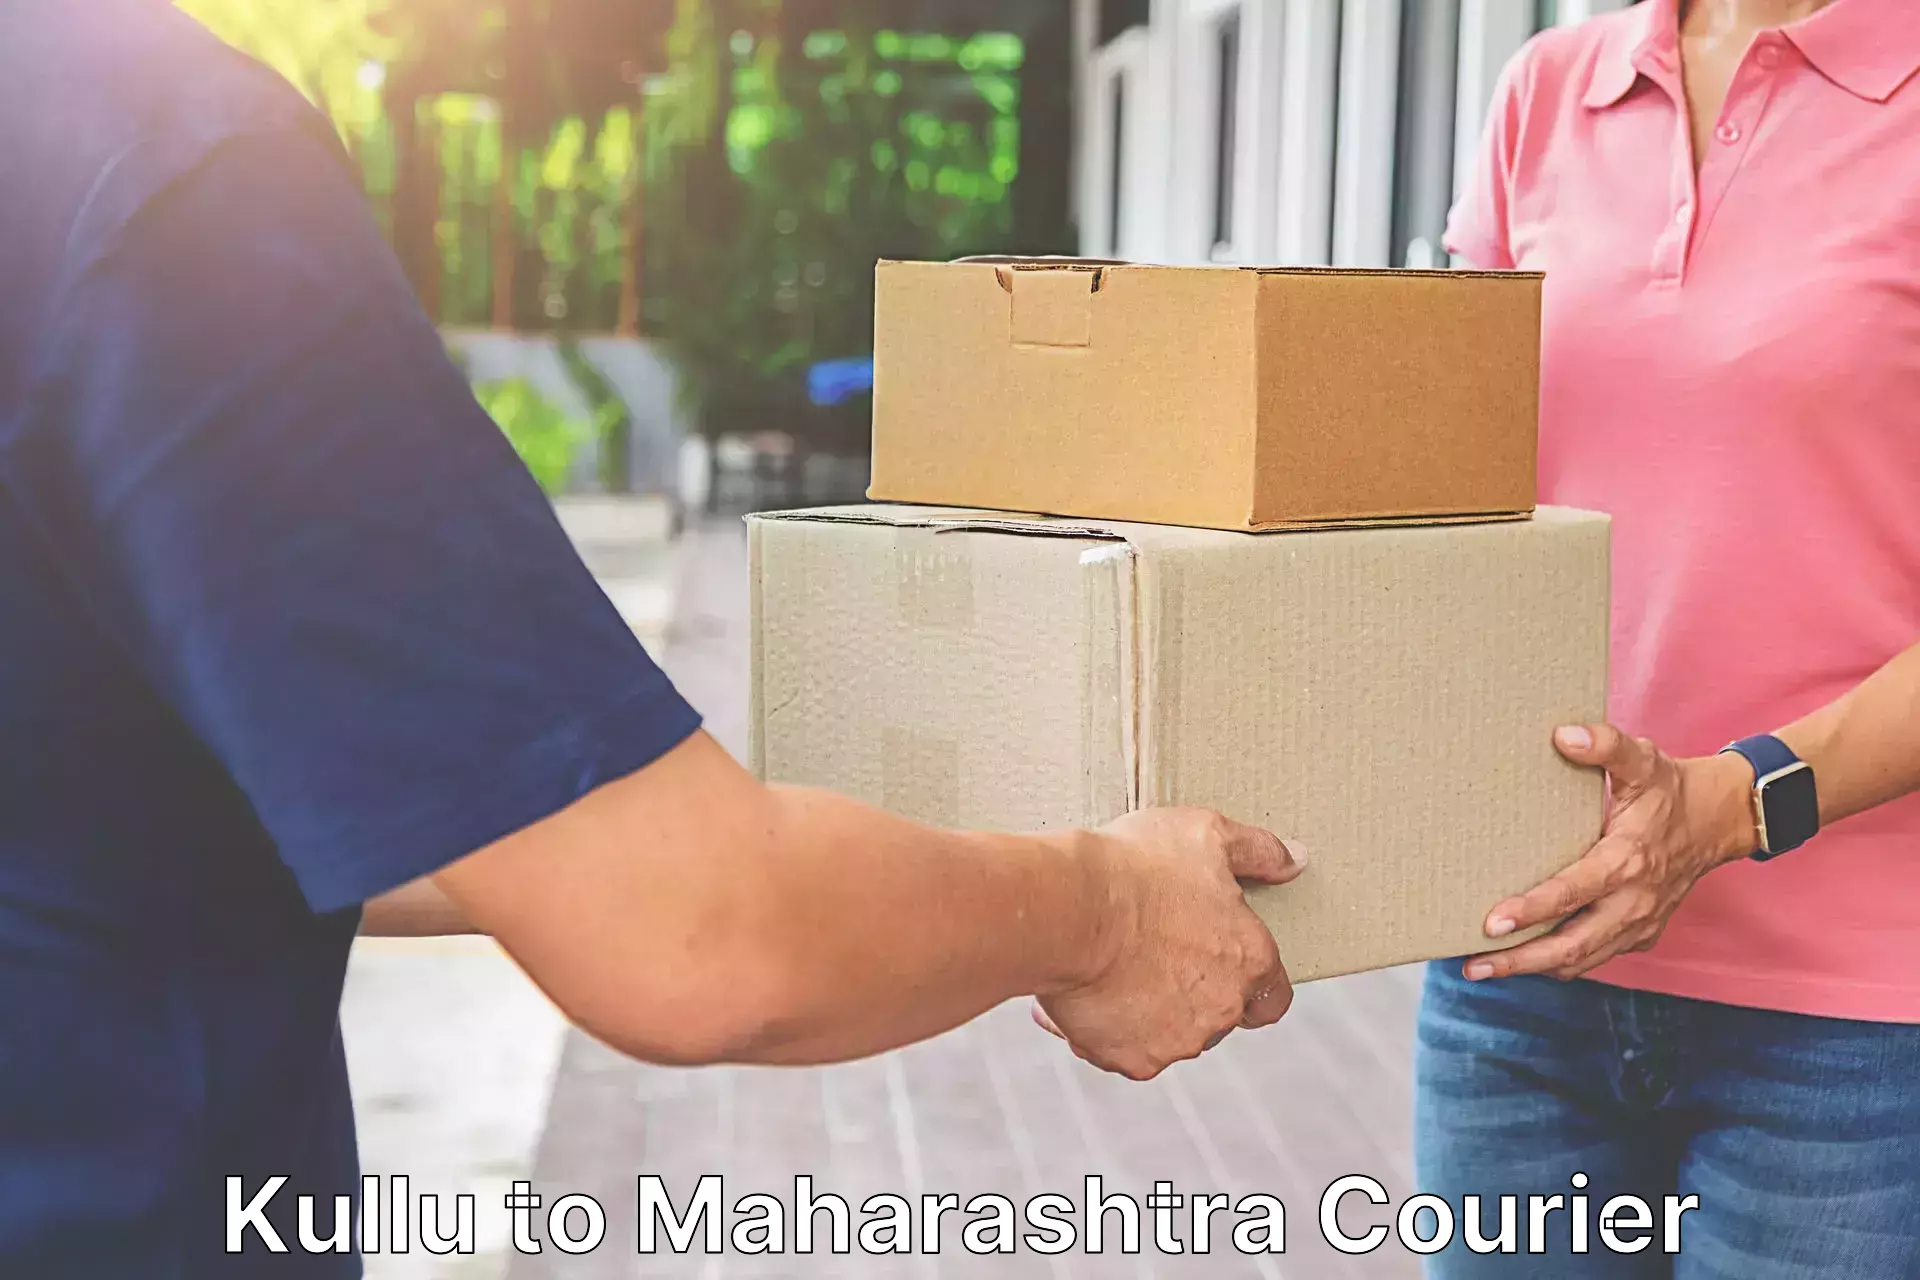 Nationwide shipping capabilities Kullu to Gadhinglaj